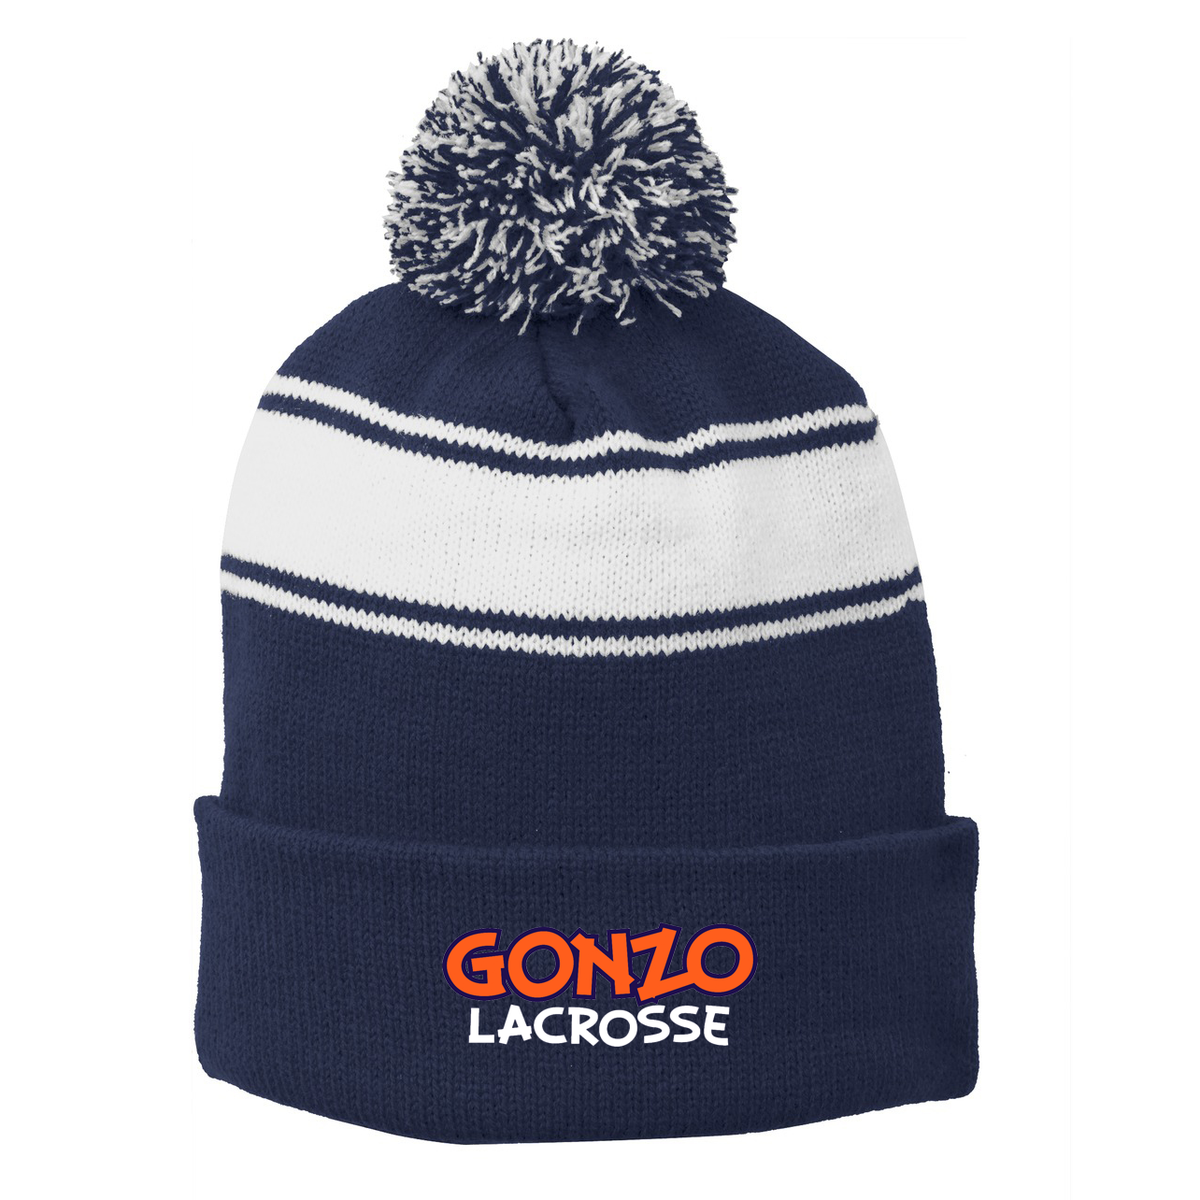 Gonzo Lacrosse Pom Pom Beanie